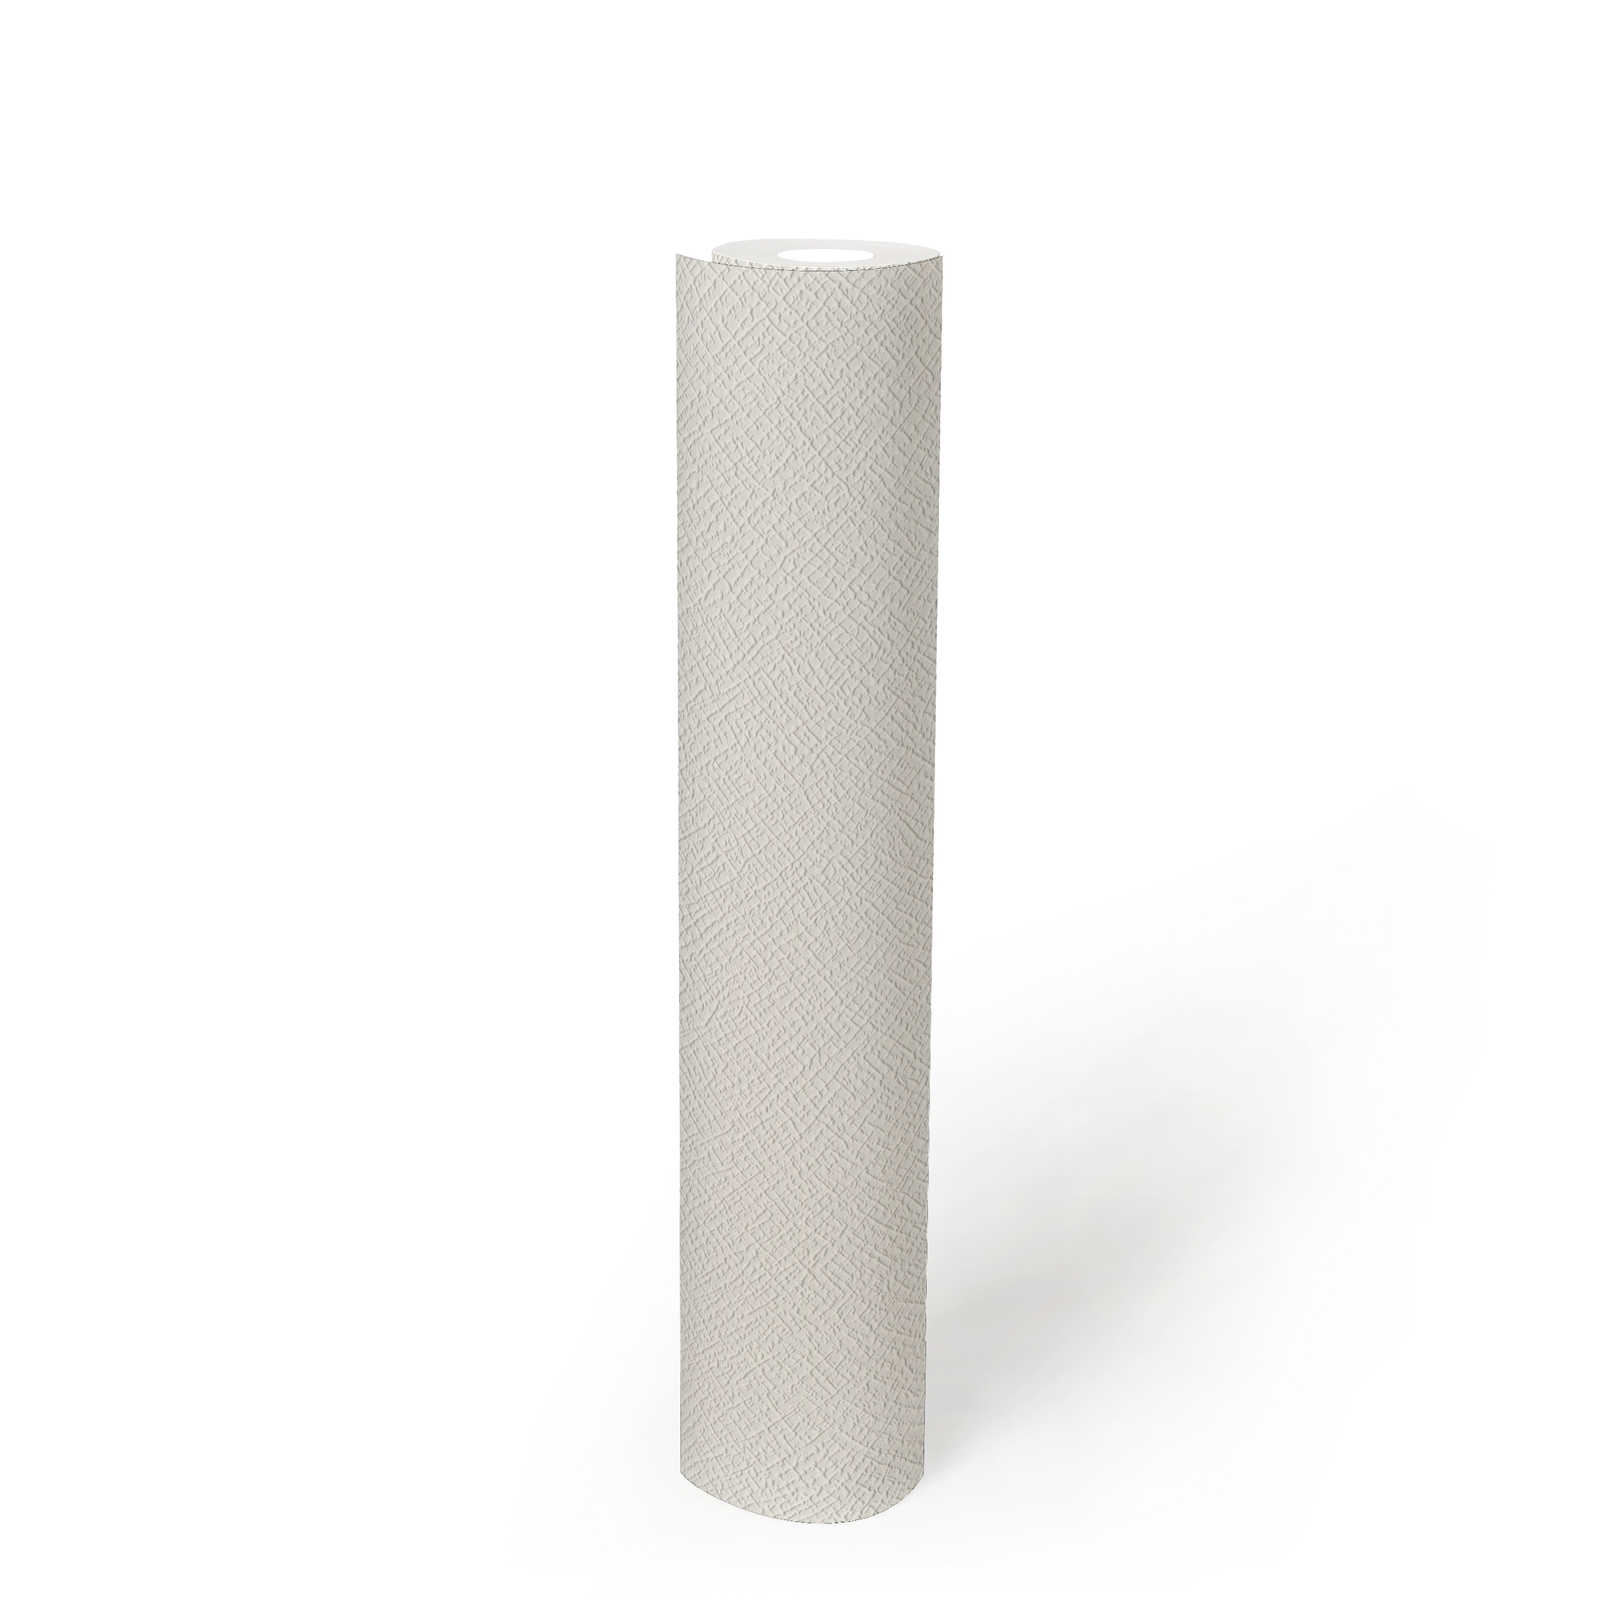             Verfbaar behangpapier met structuur - wit
        